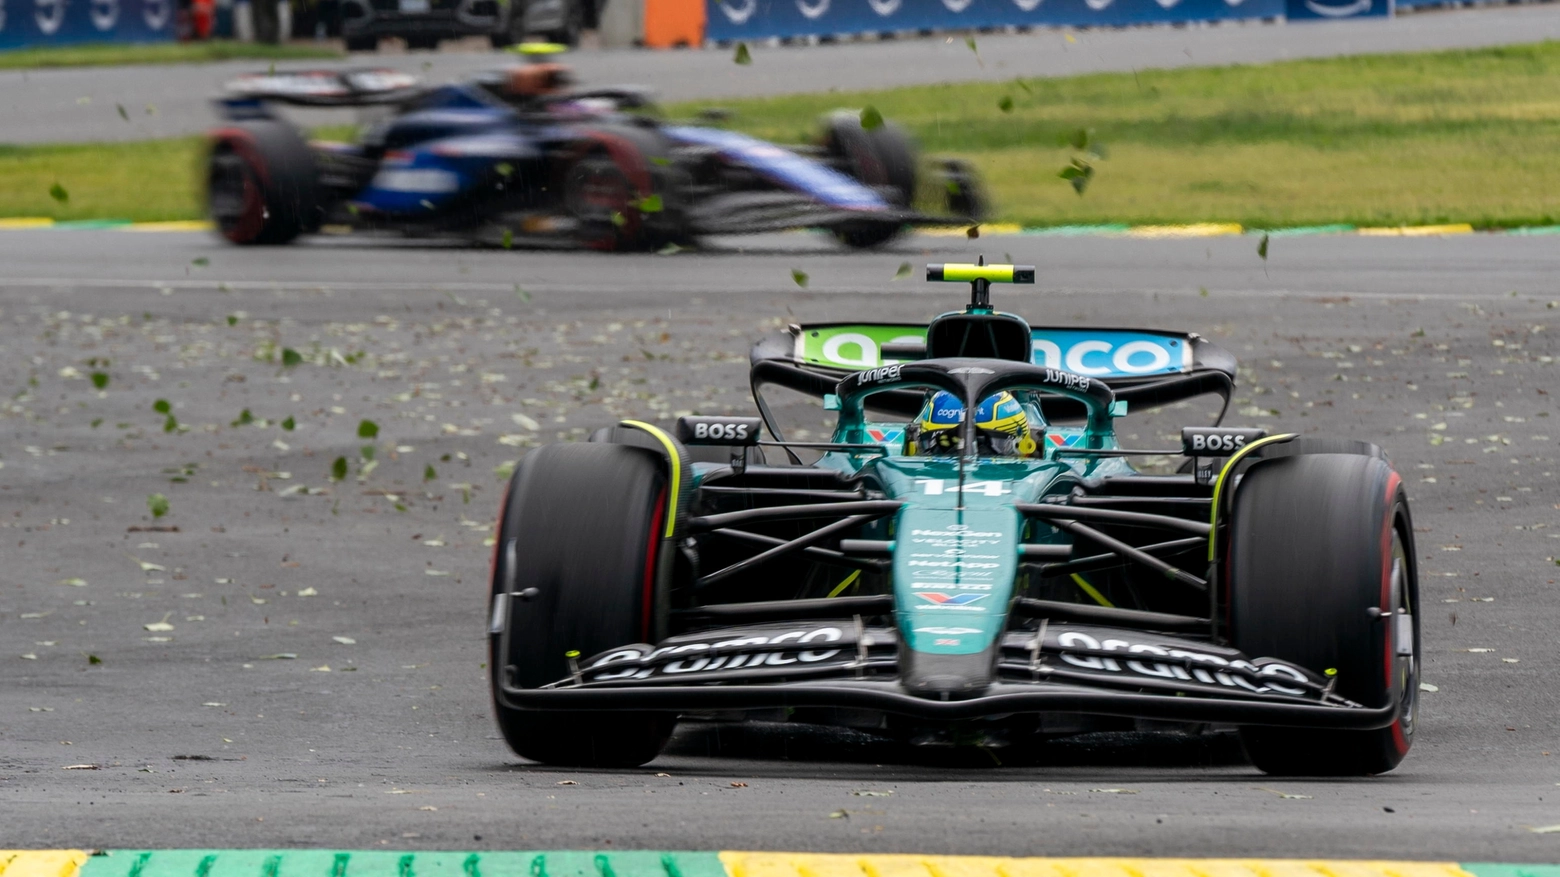 Max Verstappen fa registrare lo stesso tempo del pilota Mercedes, ma lo realizza dopo di lui e quindi rimane dietro